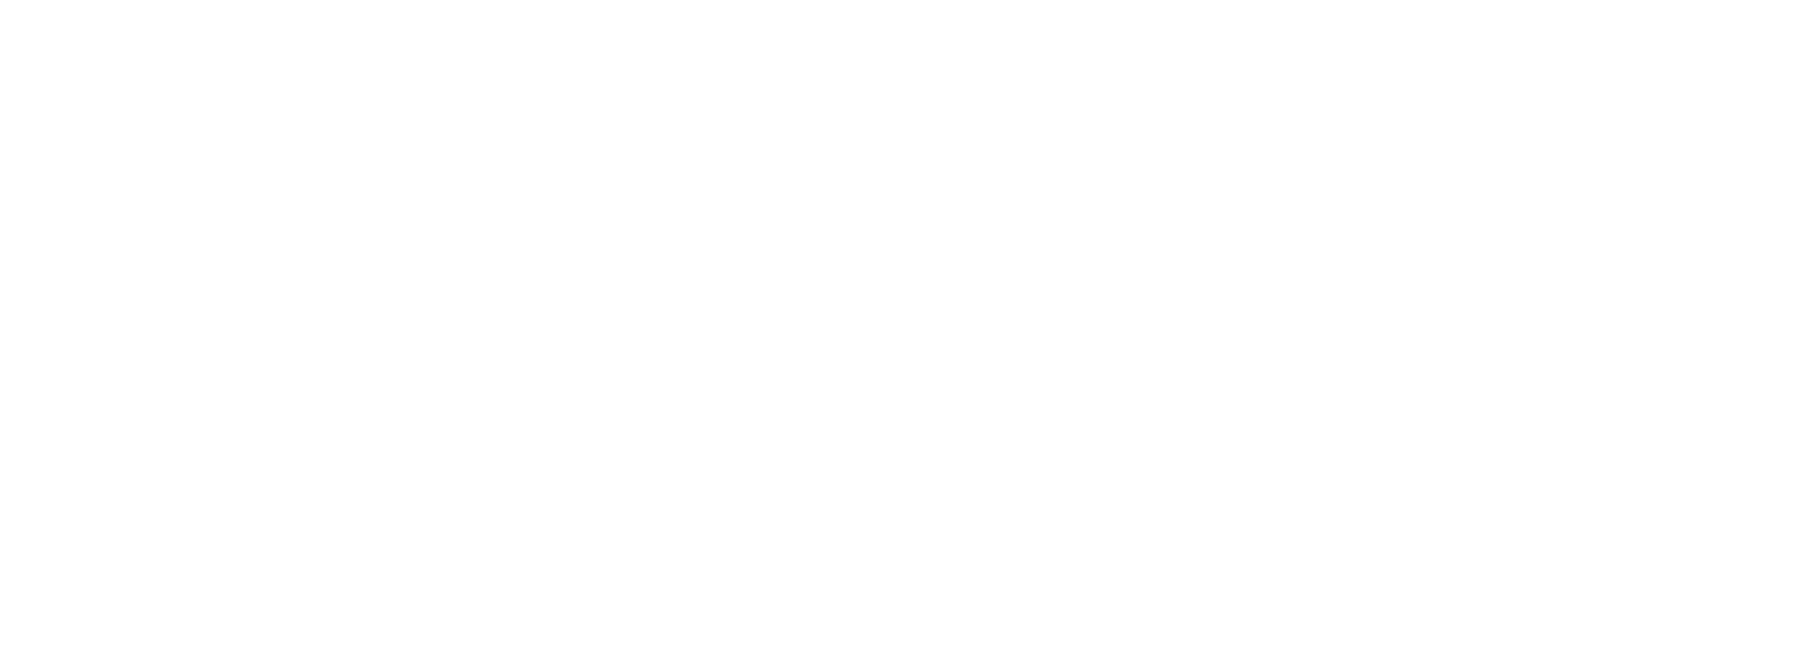 Hong Kong arts development council